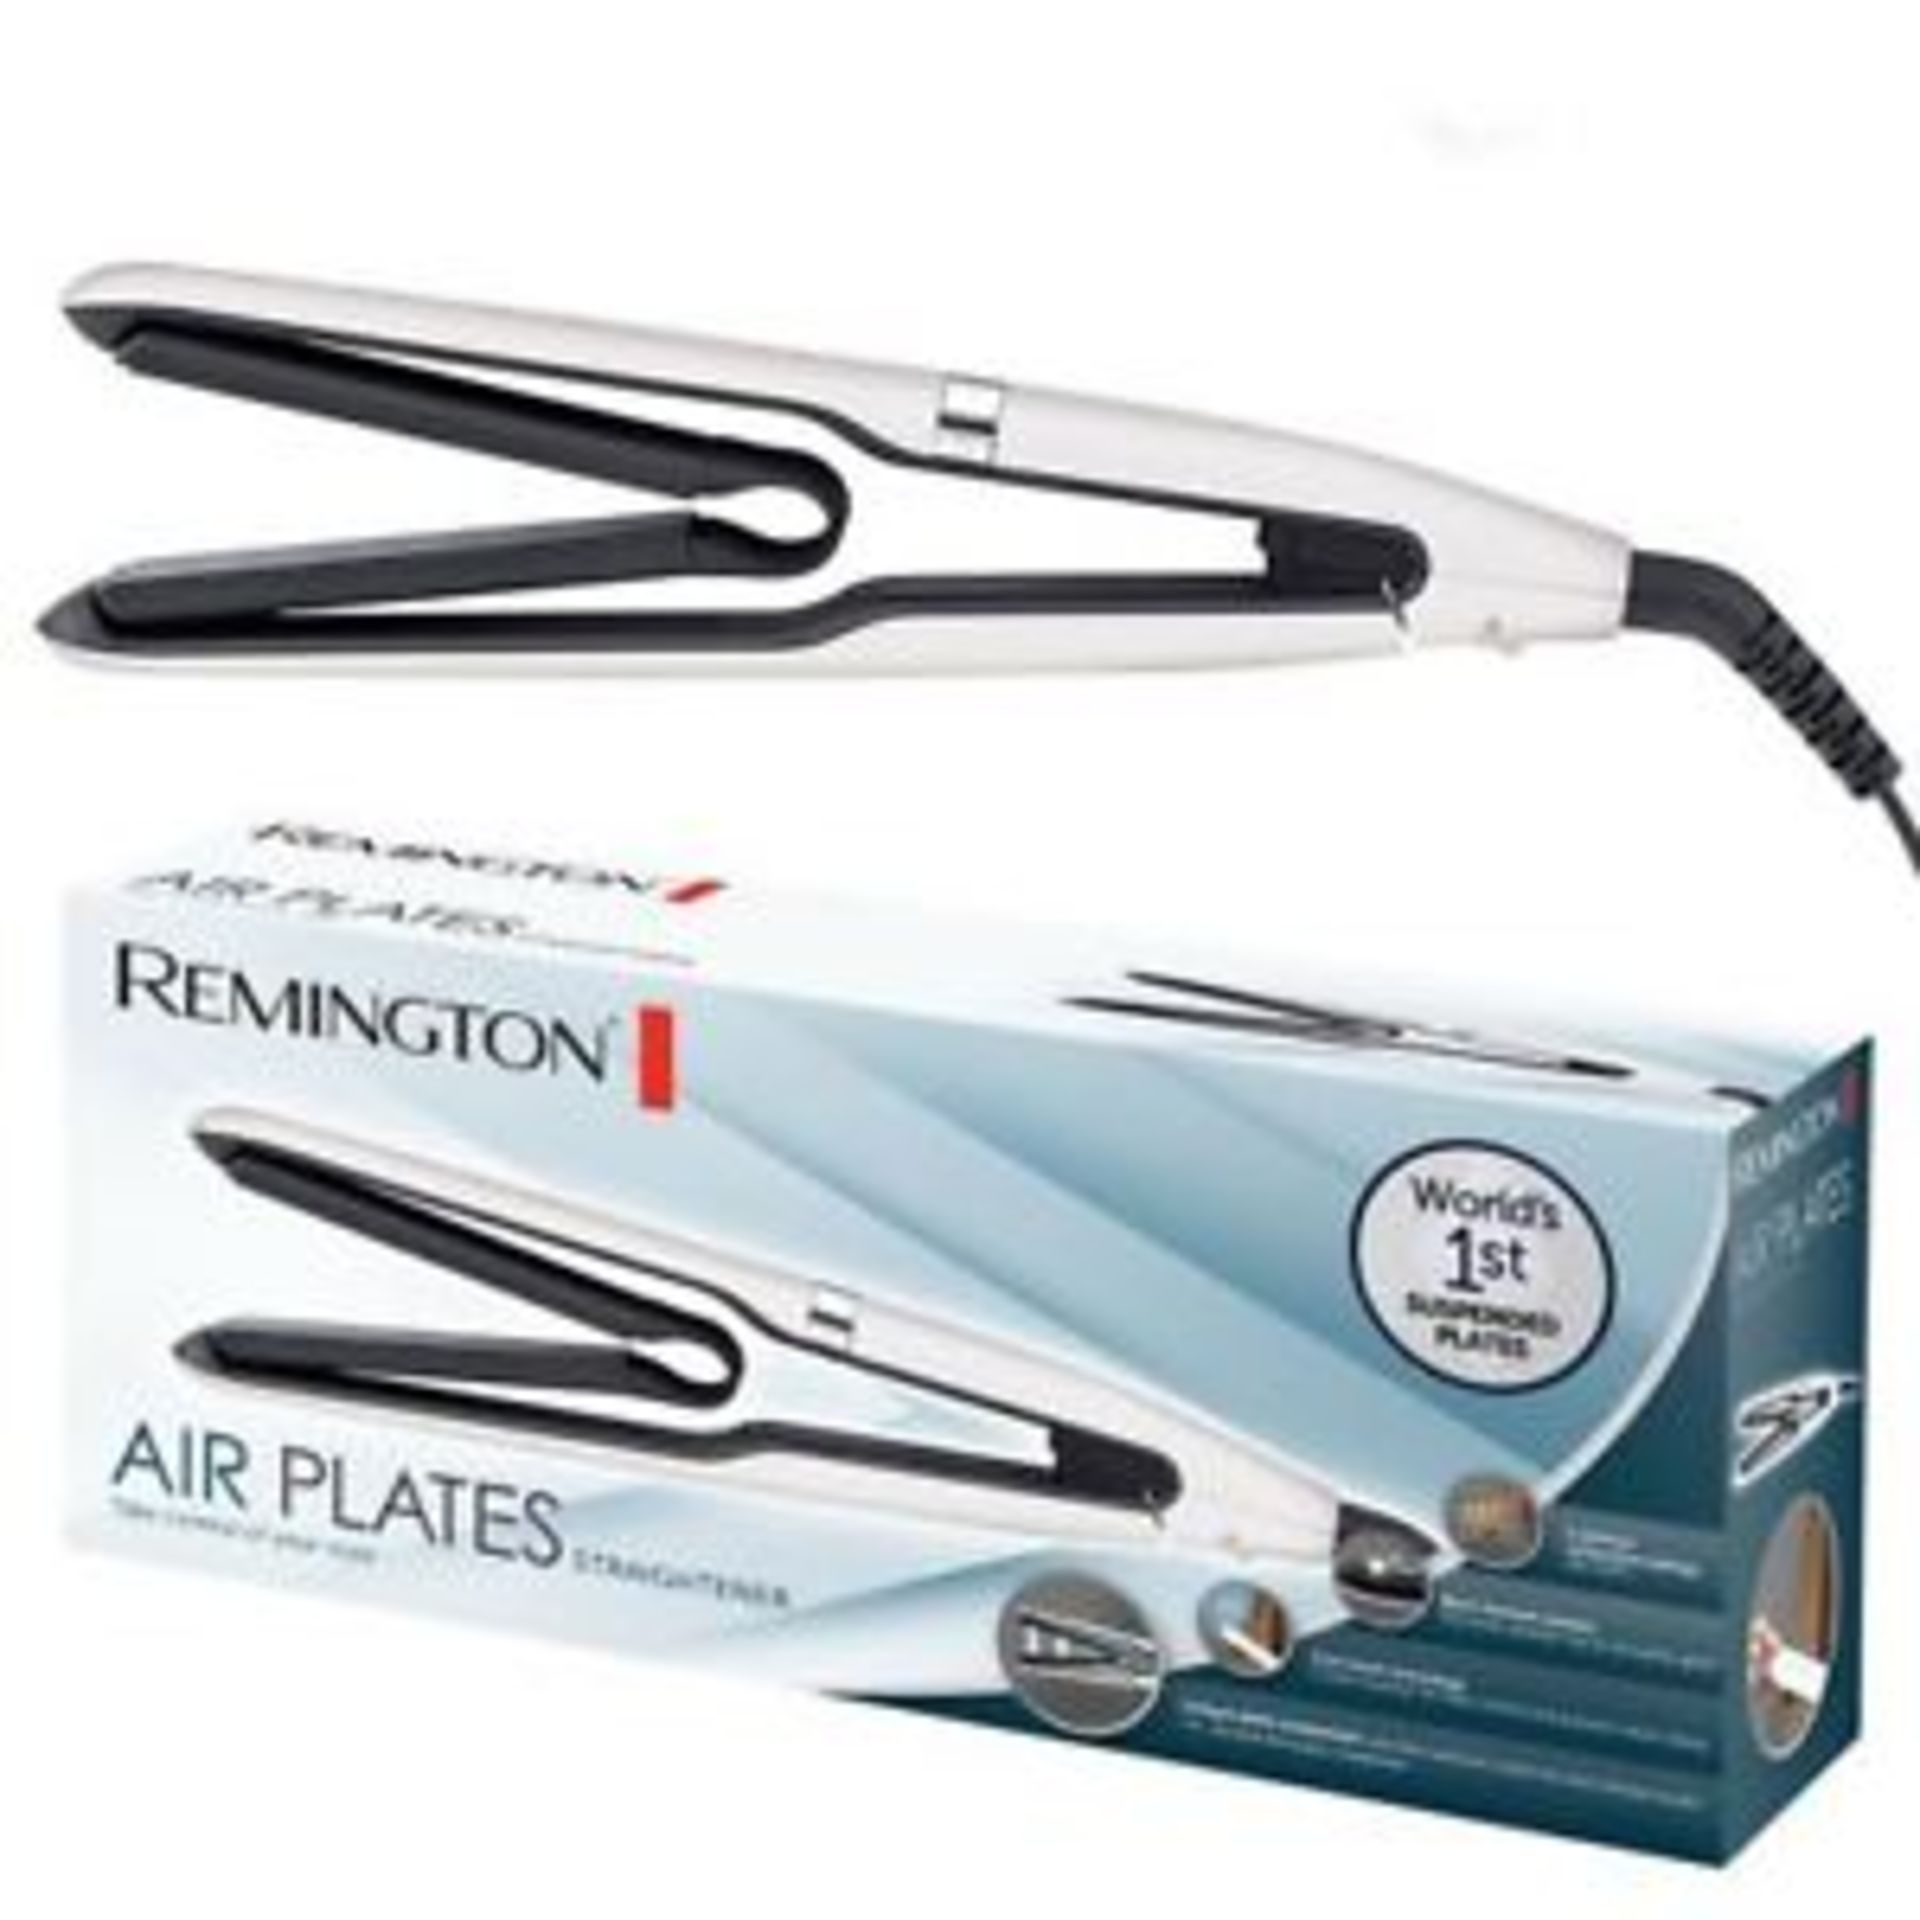 + VAT Brand New Remington Air Plates Straightener - Argos Price £79.99 - 5 Optimum Temperature - Image 3 of 3